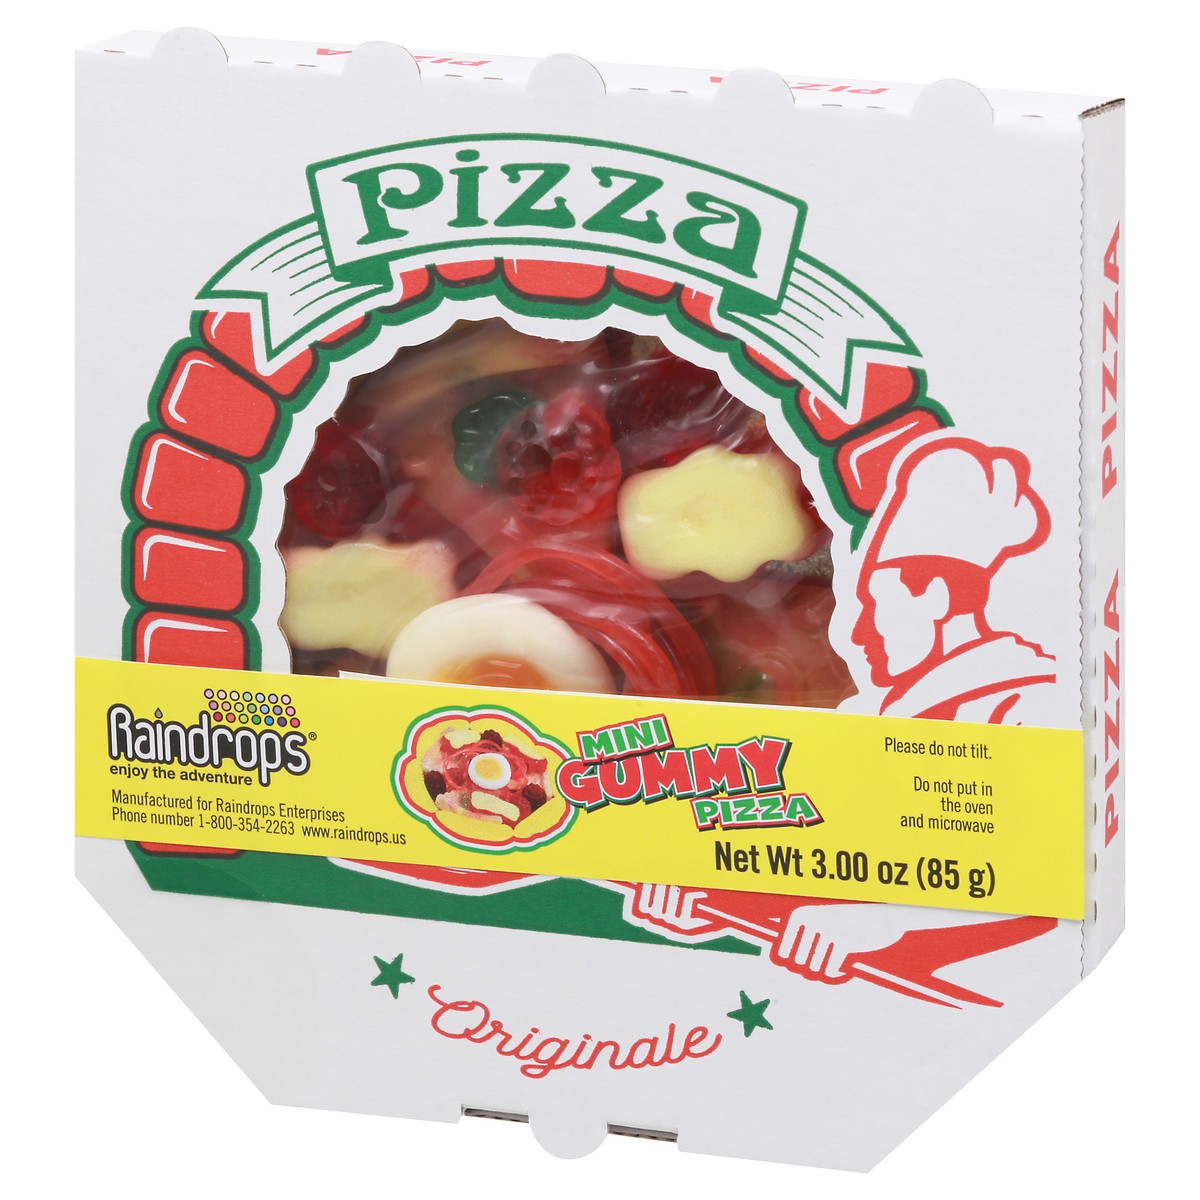 slide 3 of 9, Raindrops Originale Mini Gummy Pizza 3.00 oz Box, 3 oz